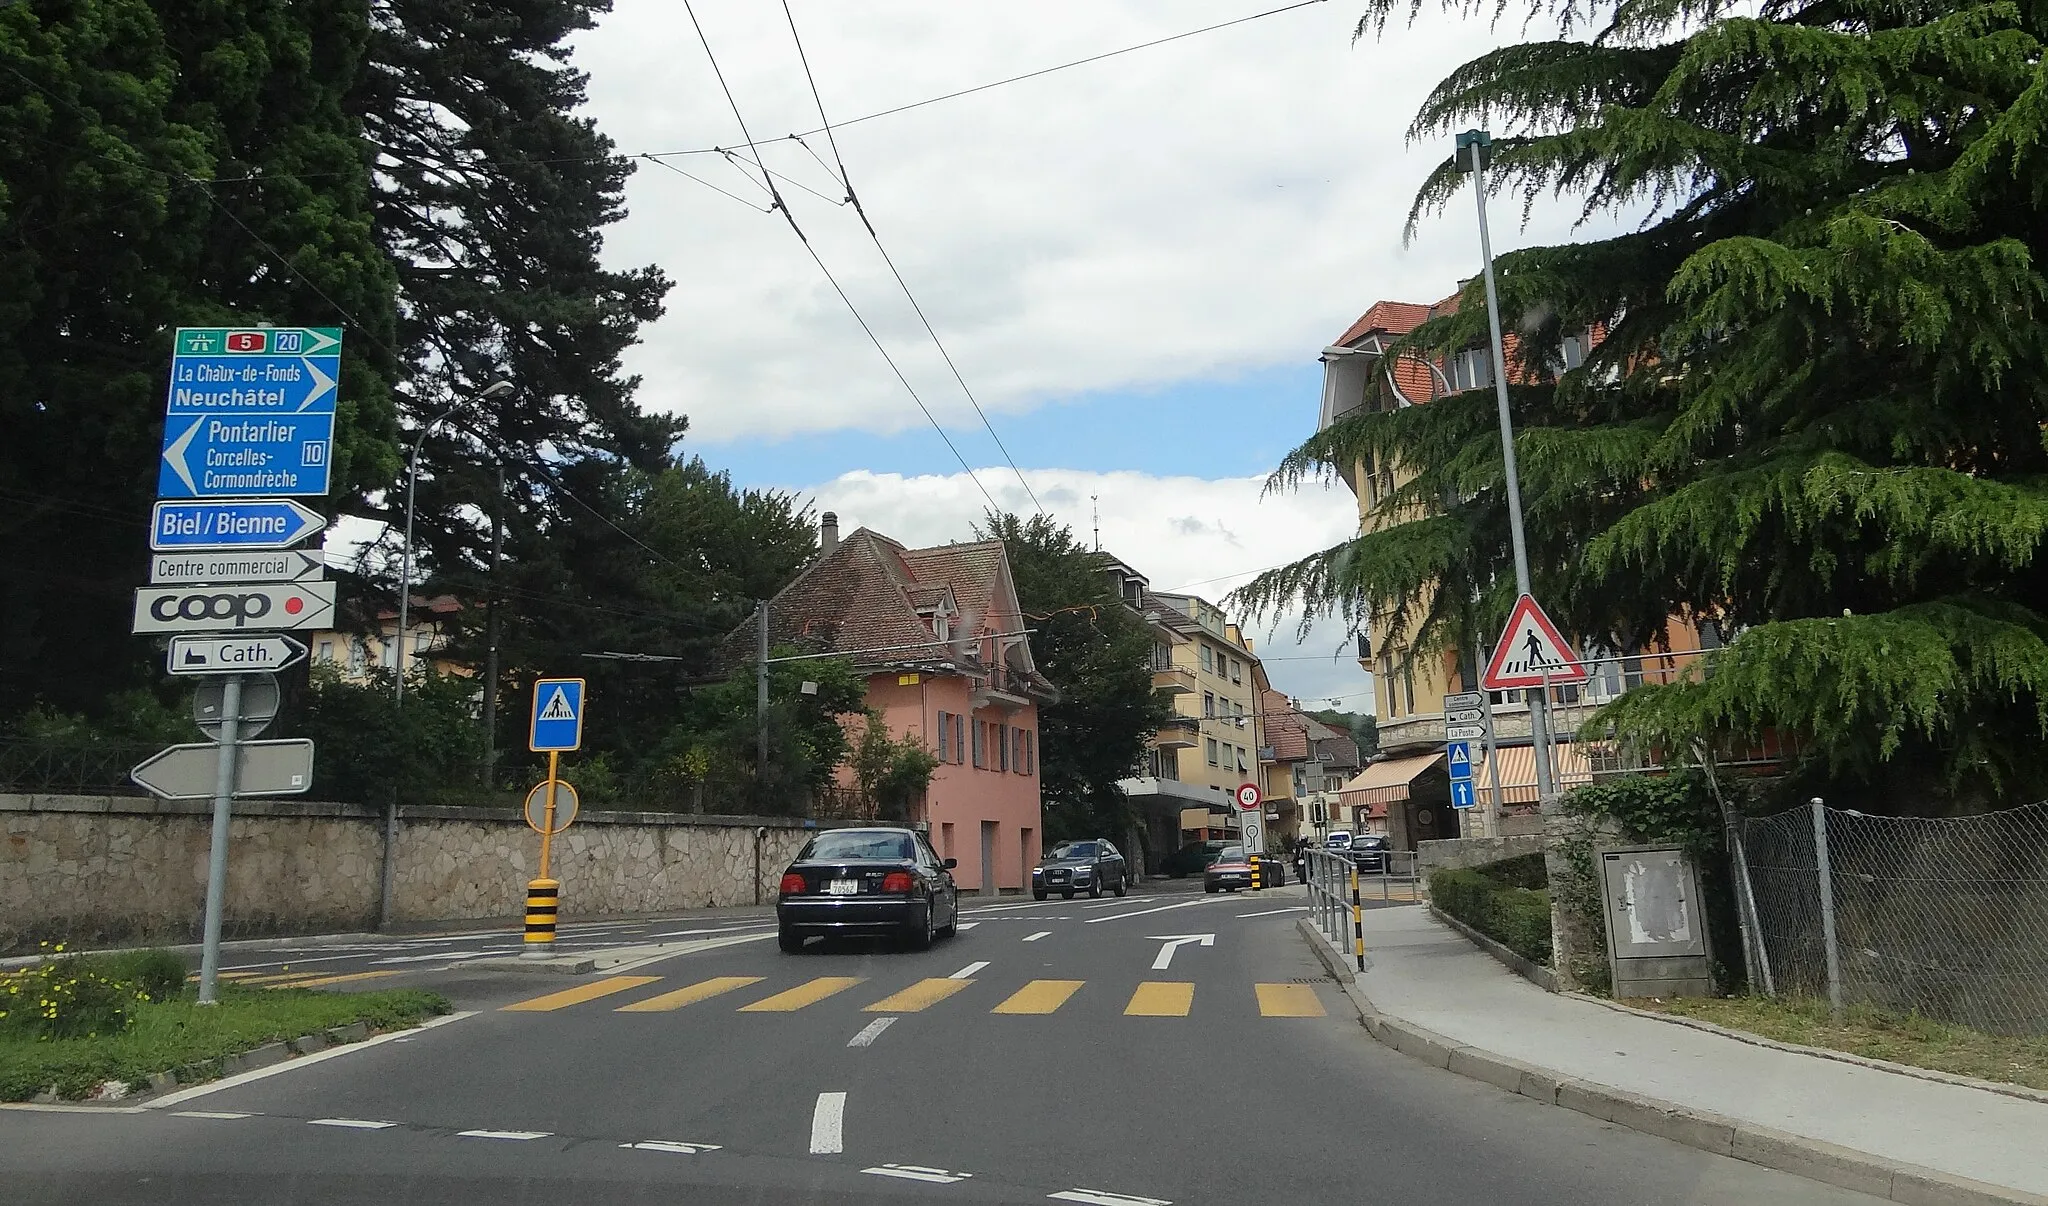 Photo showing: Peseux, Switzerland